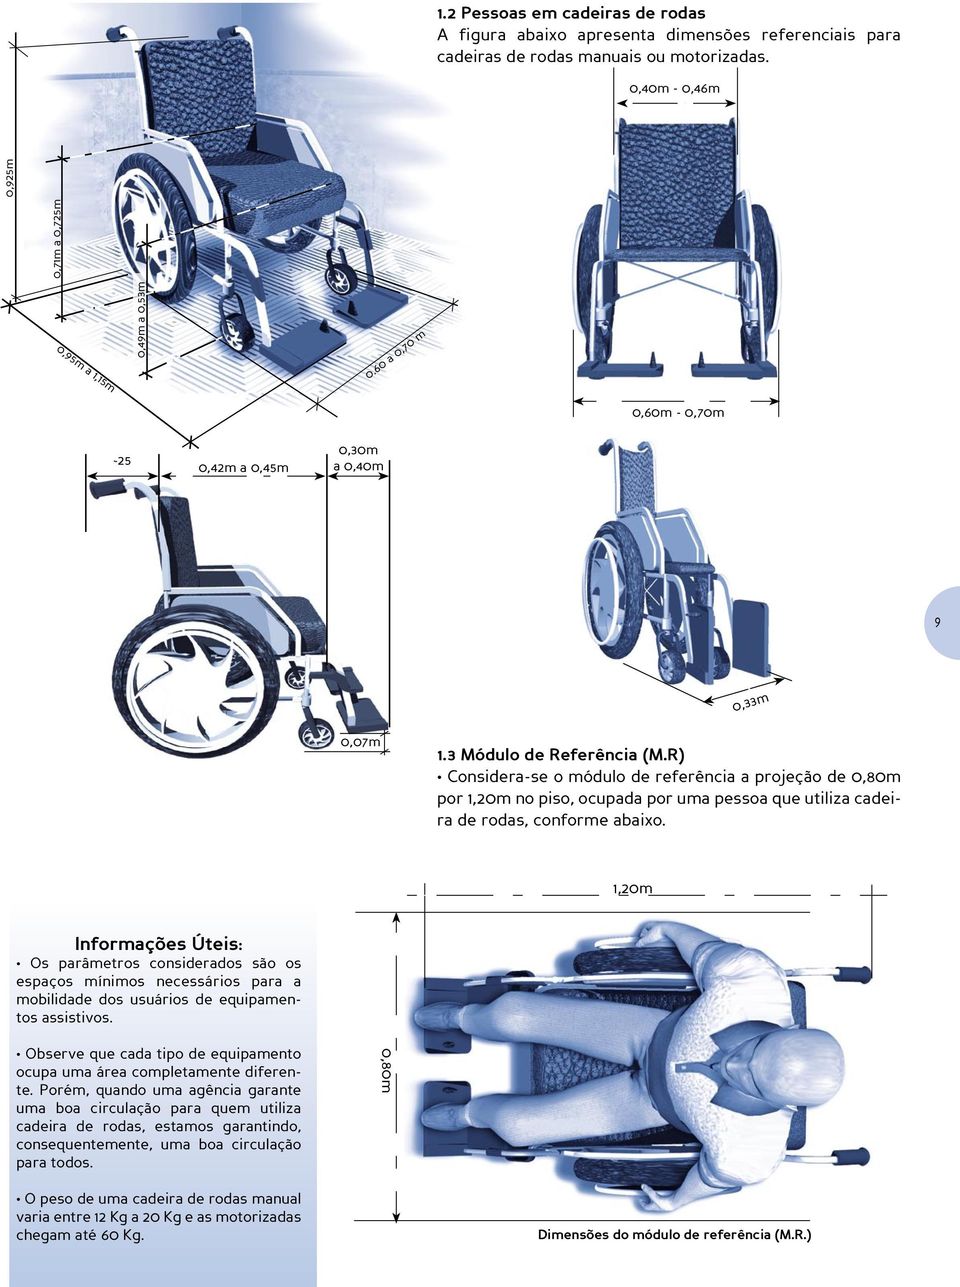 R) Considera-se o módulo de referência a projeção de 0,80m por 1,20m no piso, ocupada por uma pessoa que utiliza cadeira de rodas, conforme abaixo.